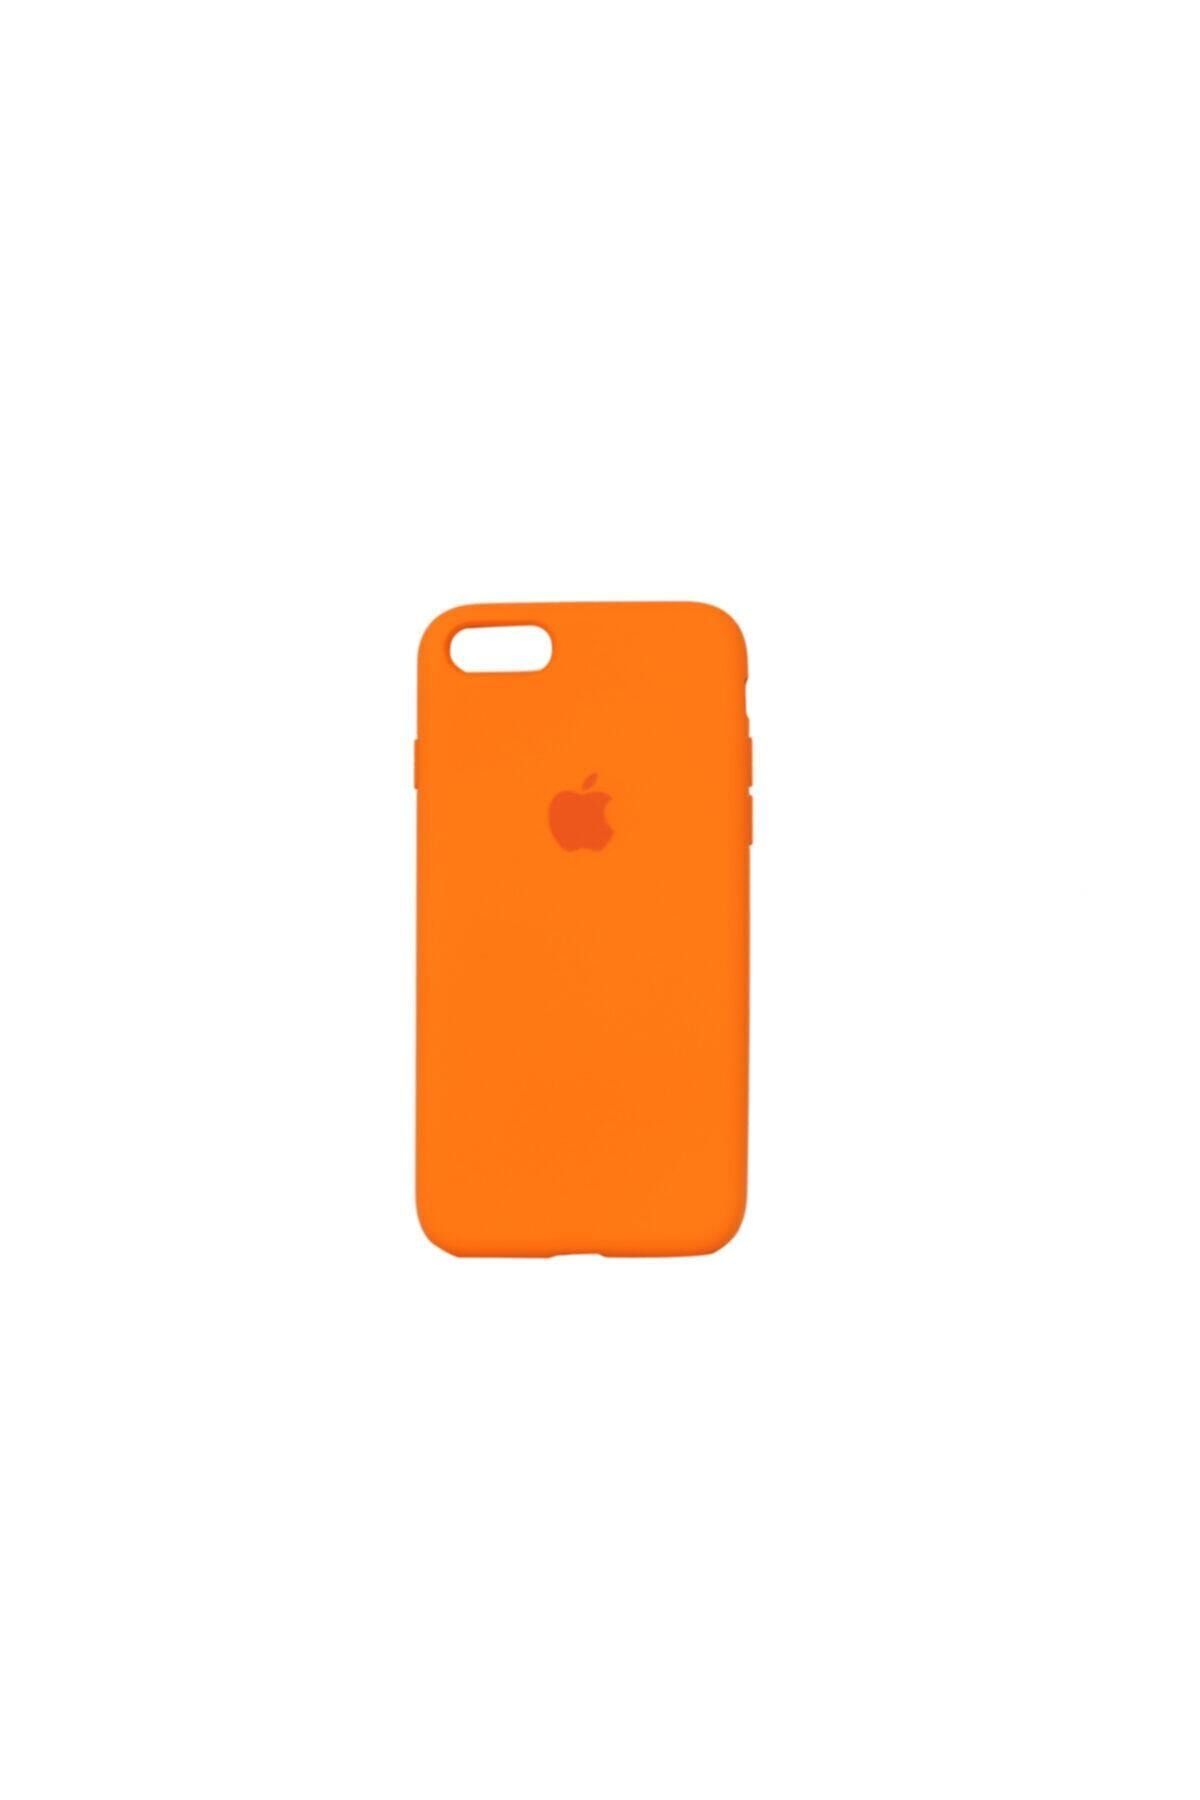 Mopal Iphone 7/8 Uyumlu  Logolu Iç Yüzeyi Kadife Altı Kapalı 360° Tam Koruma Silikon Lansman Kılıf